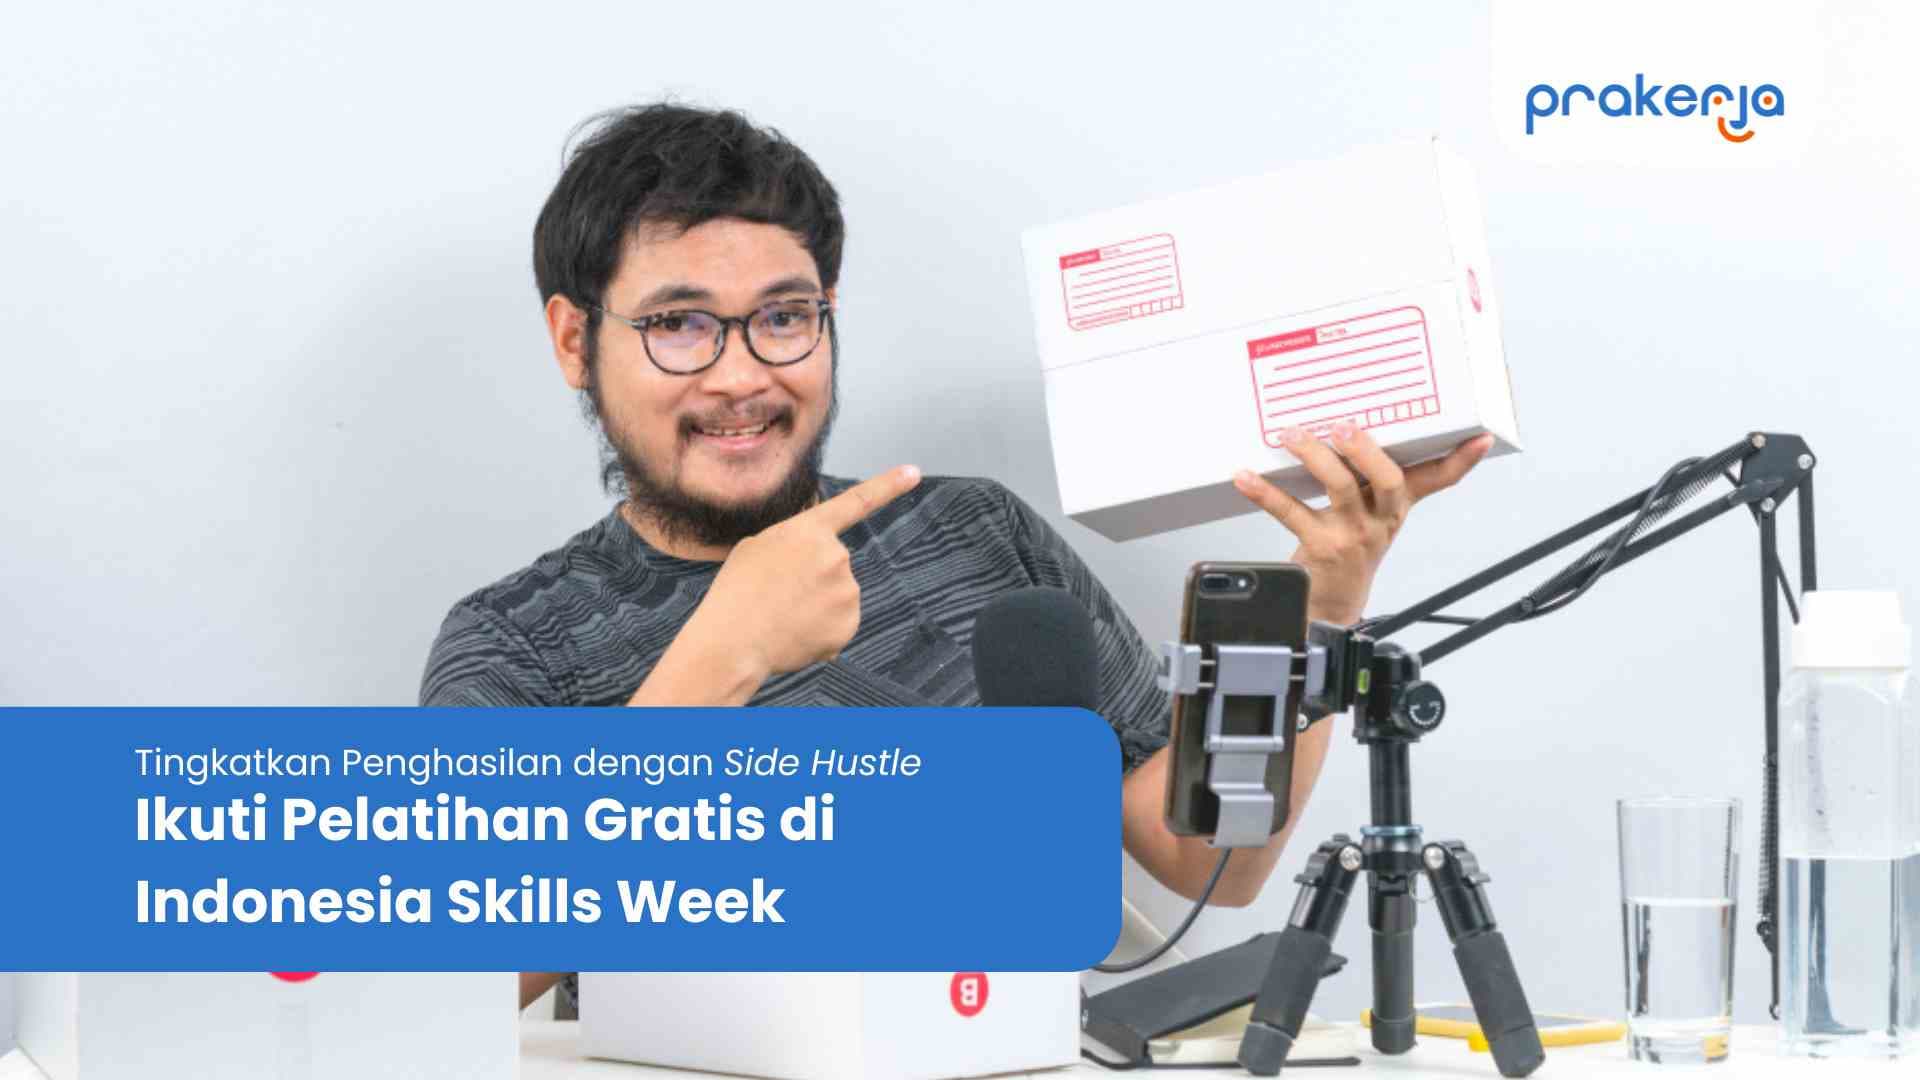 Tingkatkan Penghasilan dengan Side Hustle! Pelatihan Gratis di Indonesia Skills Week dibuka hari ini.